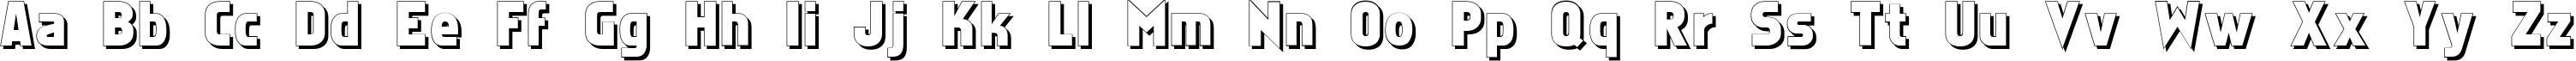 Пример написания английского алфавита шрифтом Faktos Shadow